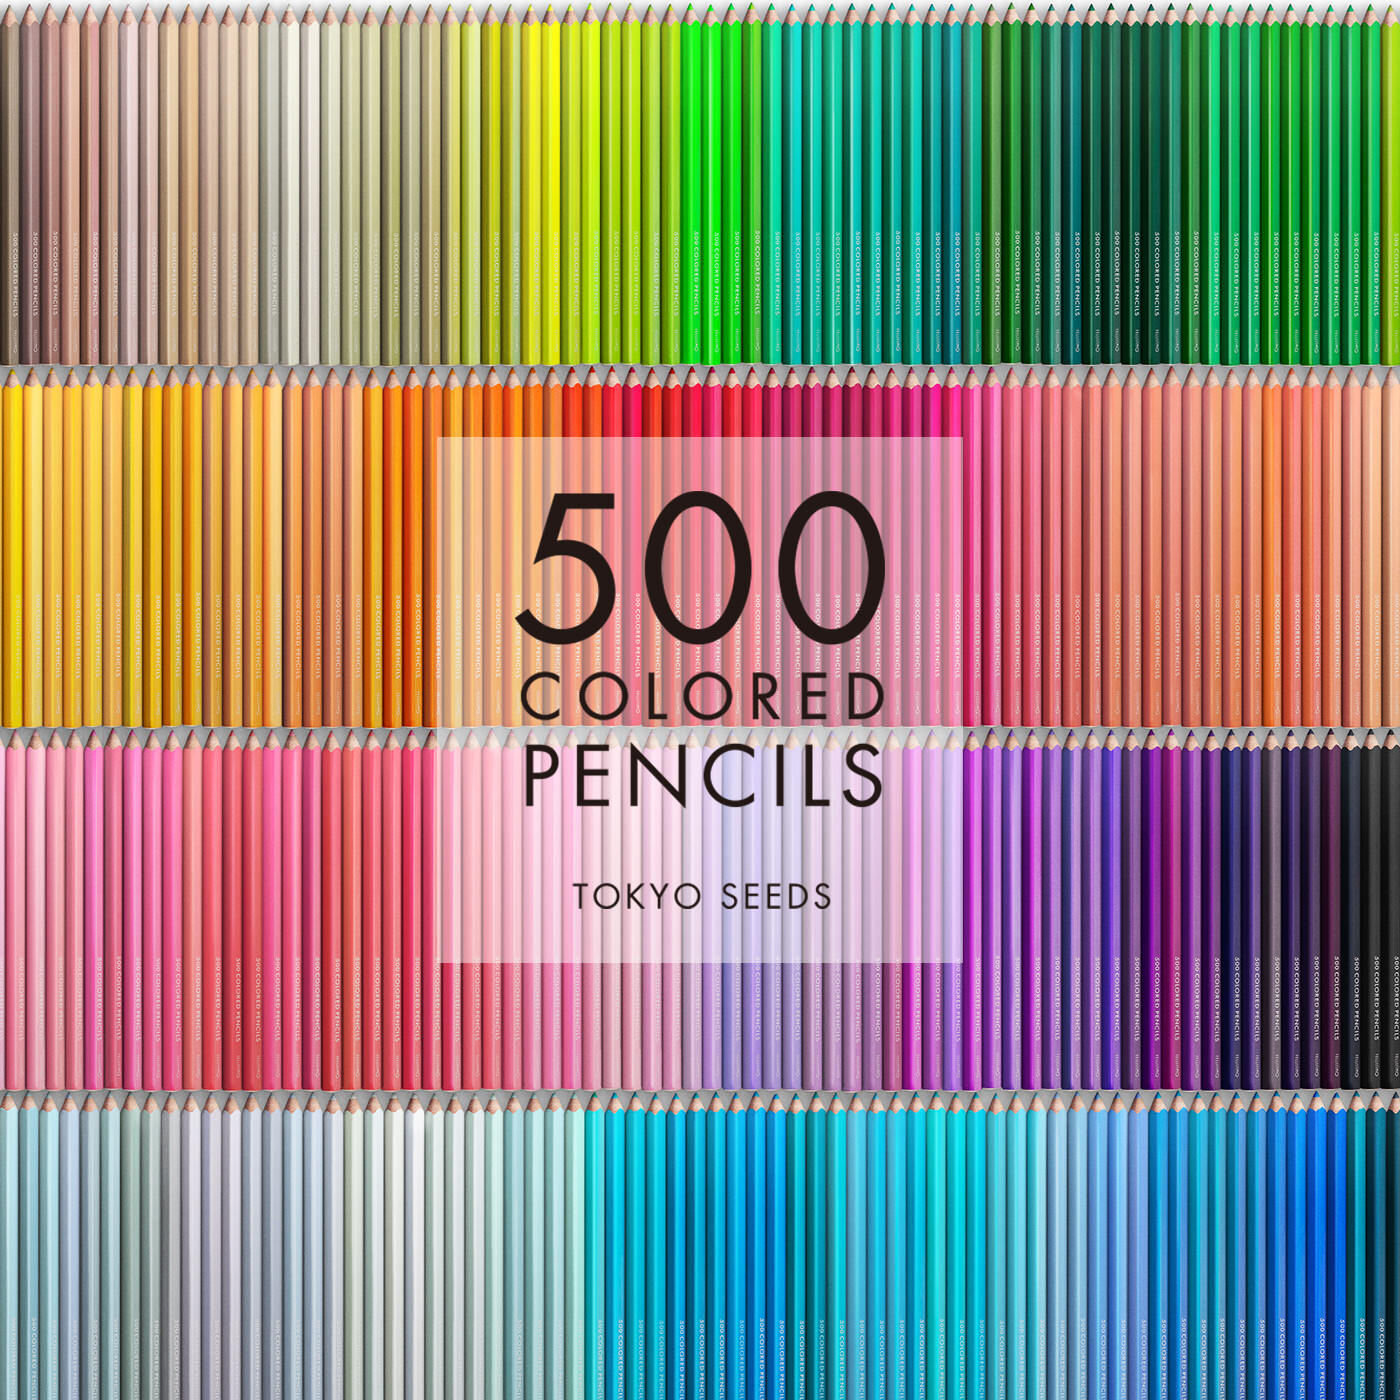 Real Stock|【164/500 CREAMED BUTTER】500色の色えんぴつ TOKYO SEEDS|1992年、世界初の「500色」という膨大な色数の色えんぴつが誕生して以来、その販売数は発売当初から合わせると、世界55ヵ国10万セット以上。今回、メイド・イン・ジャパンにこだわり、すべてが新しく生まれ変わって登場しました。